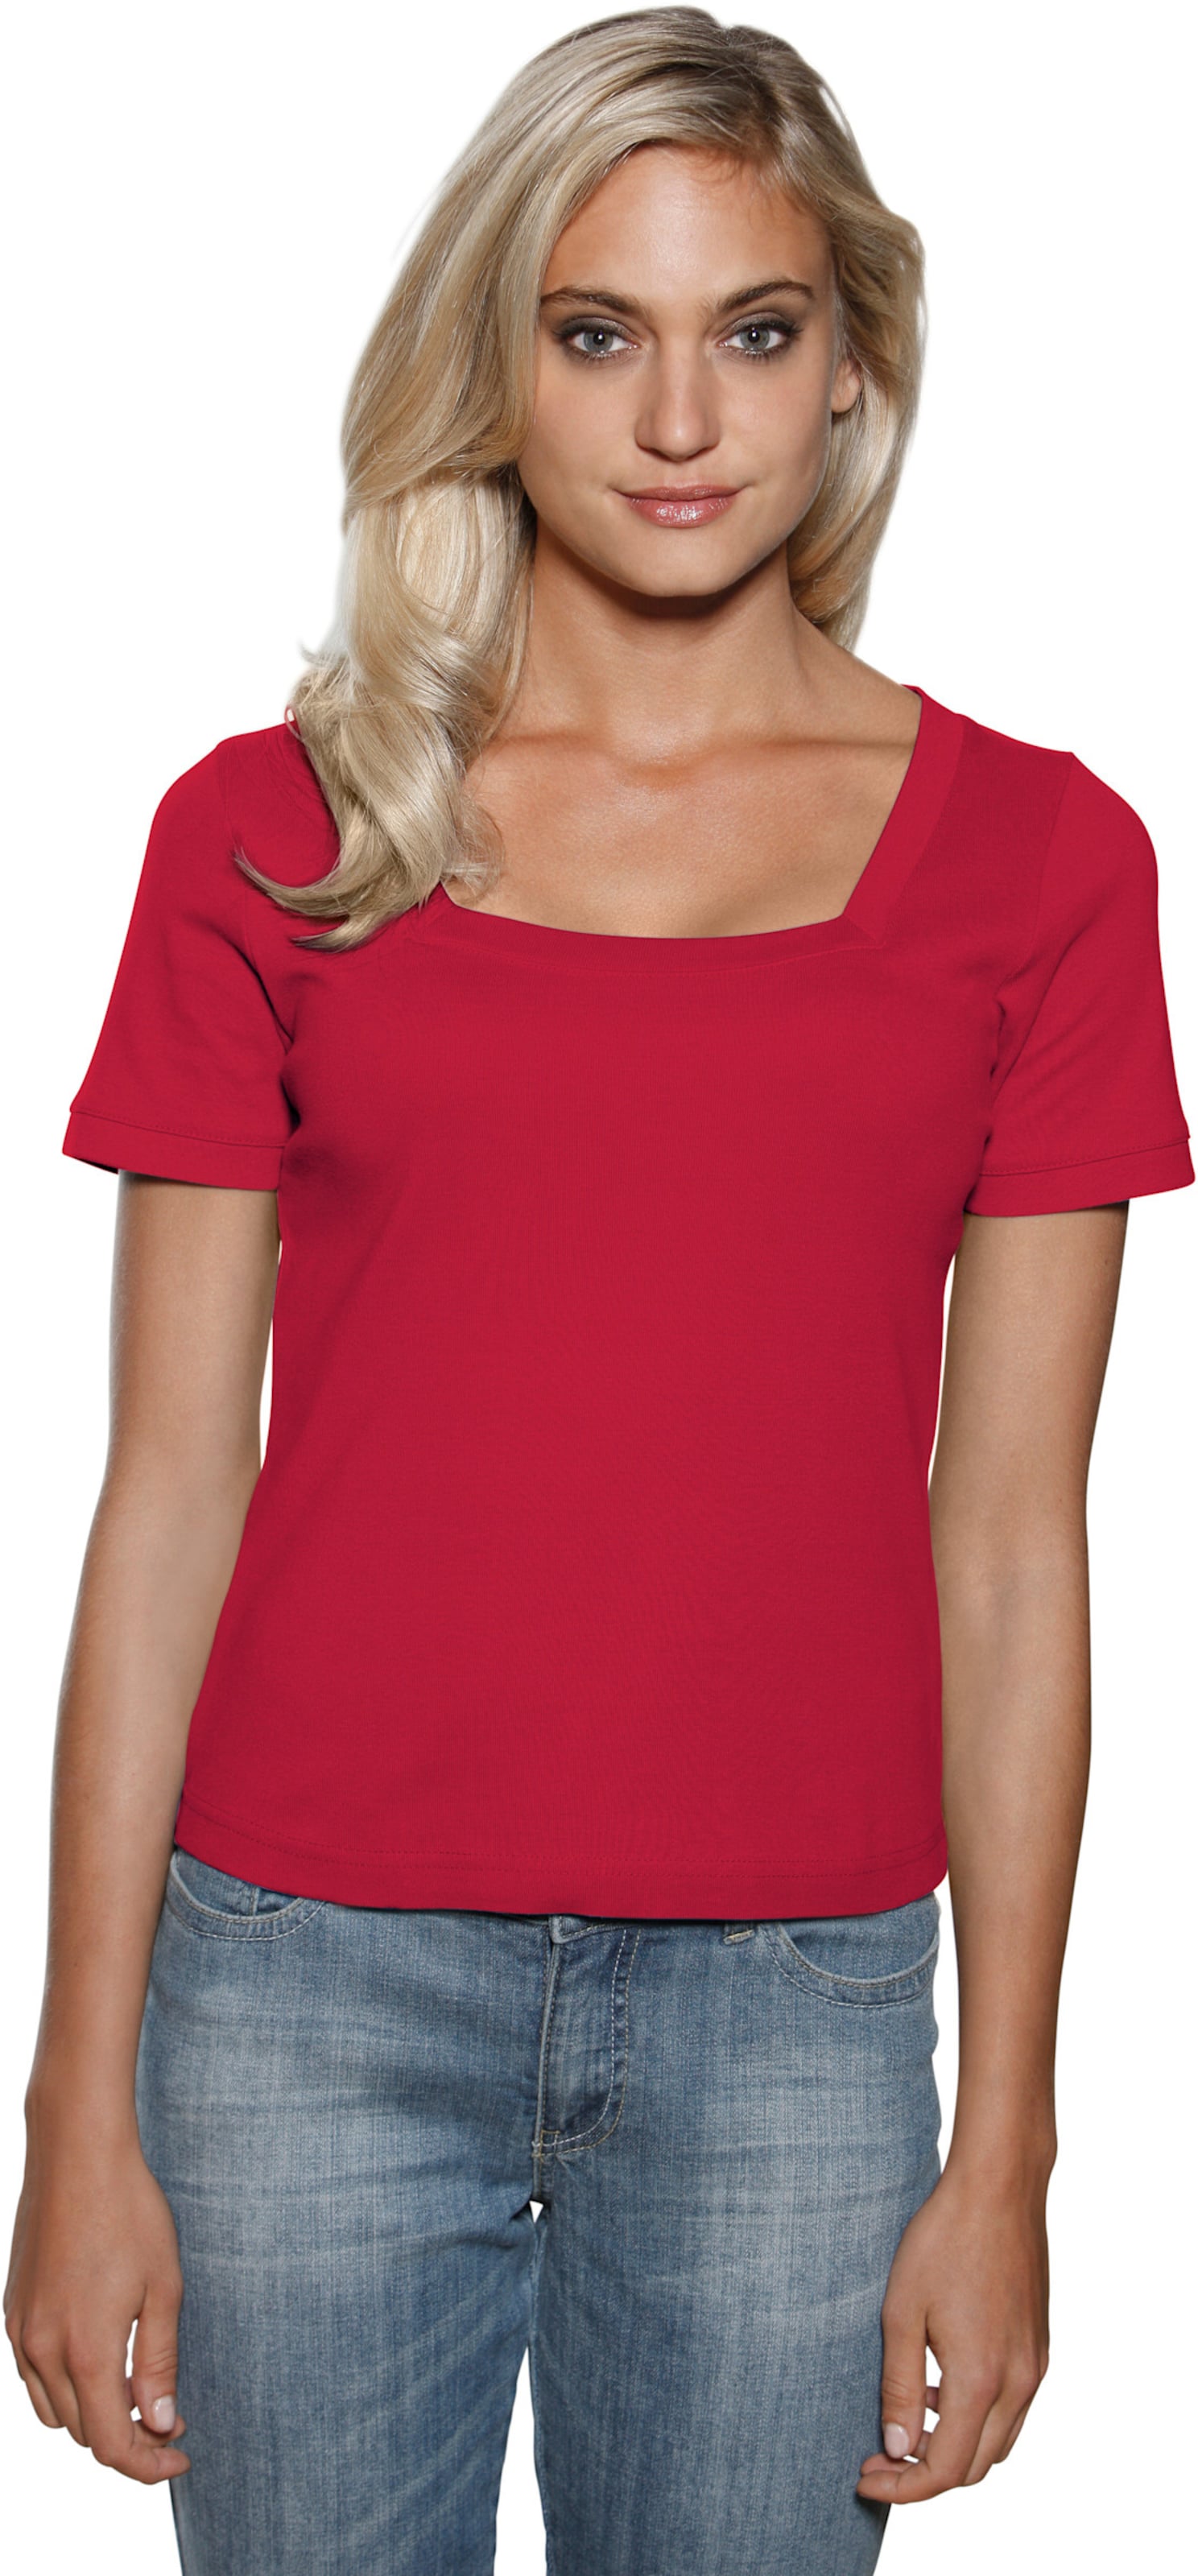 Witt Damen Carré-Shirt, rot